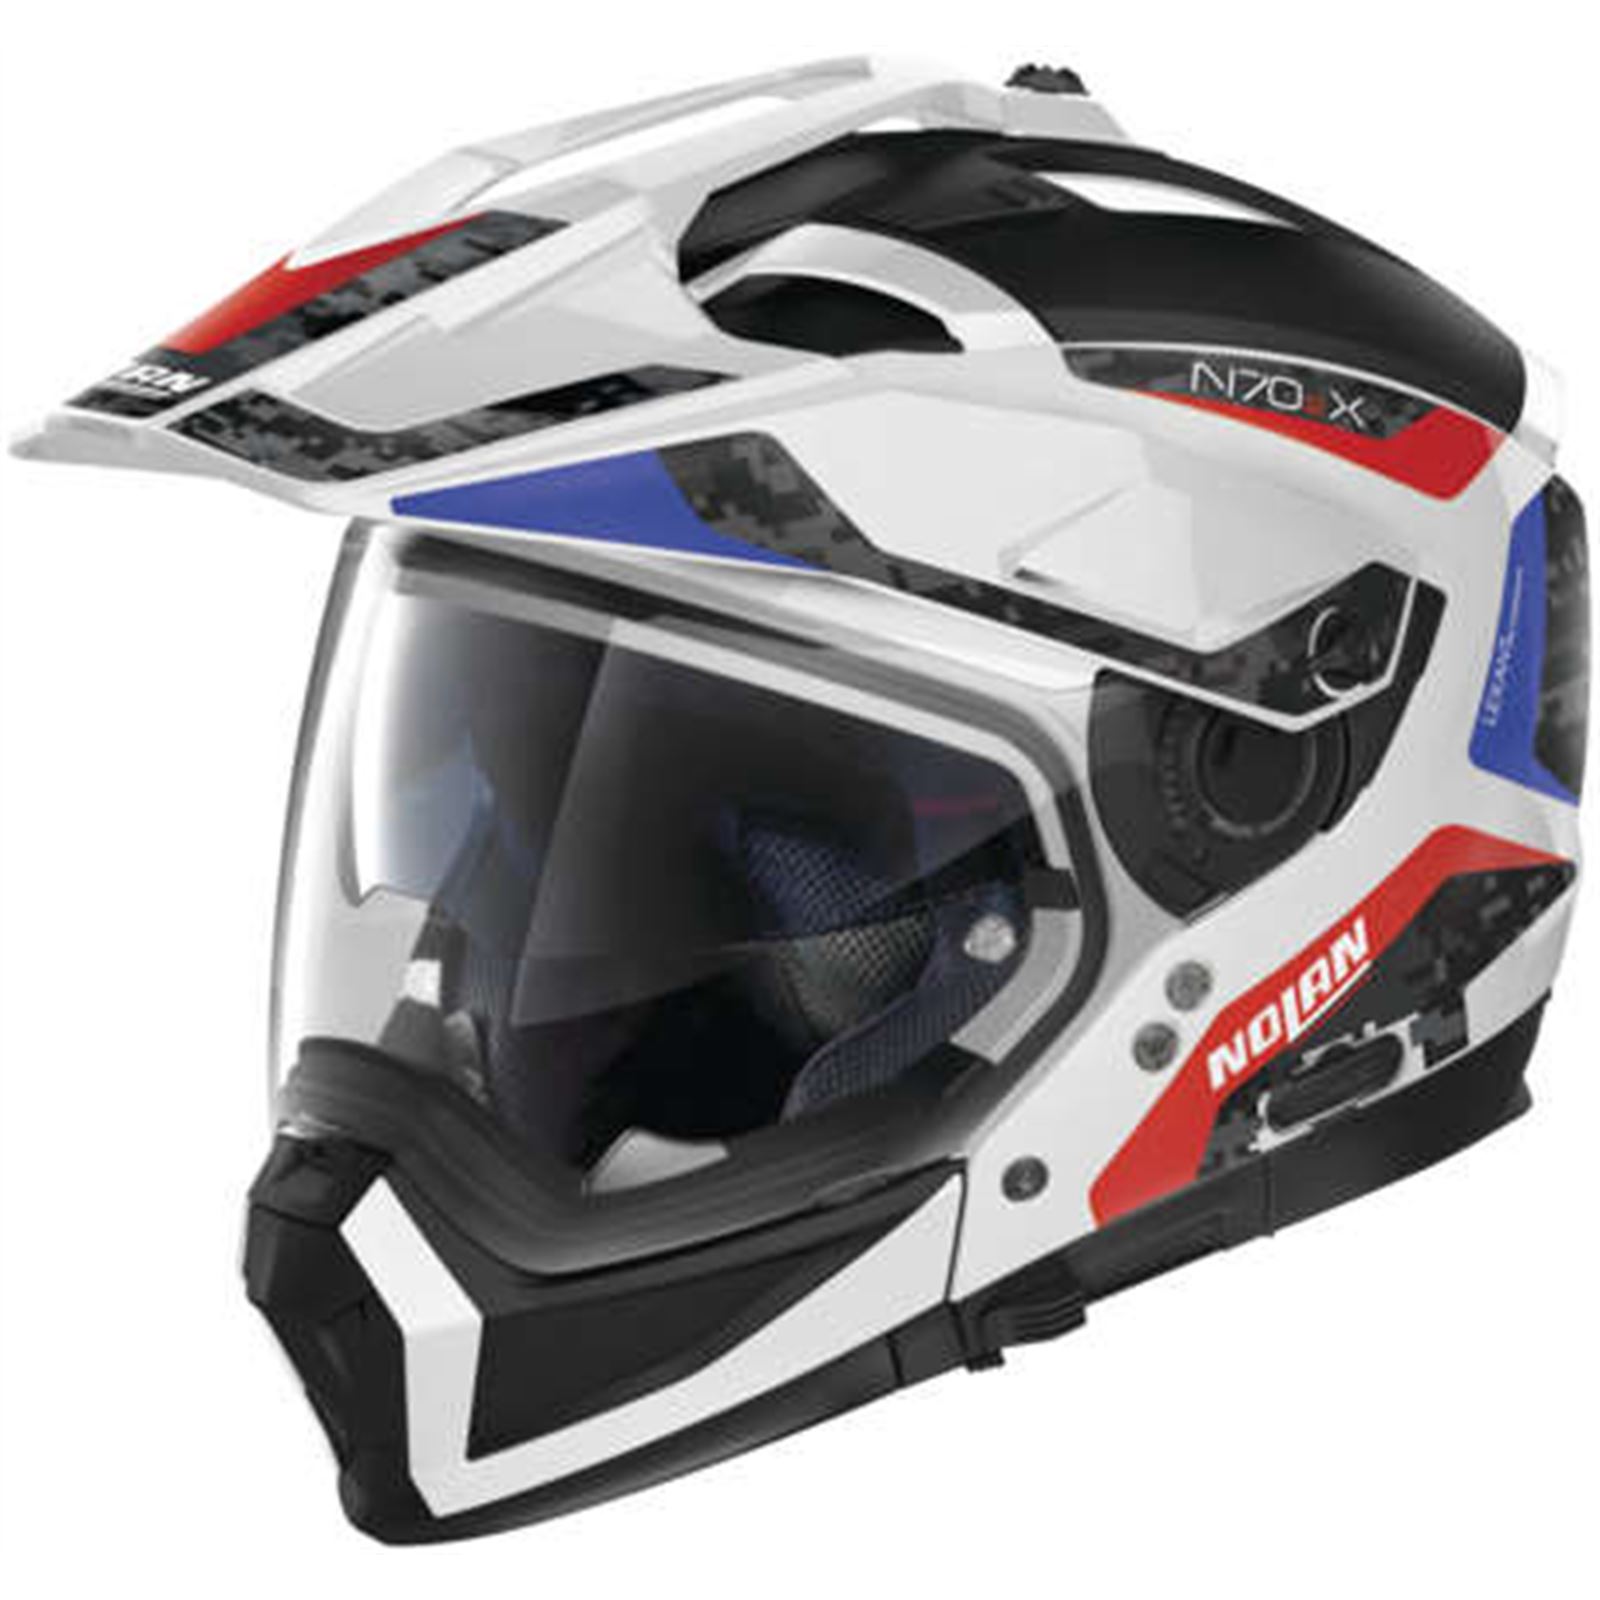 Nolan Helmets N70-2 X Torpedo Helmet Metal White/Blue/Red, Large